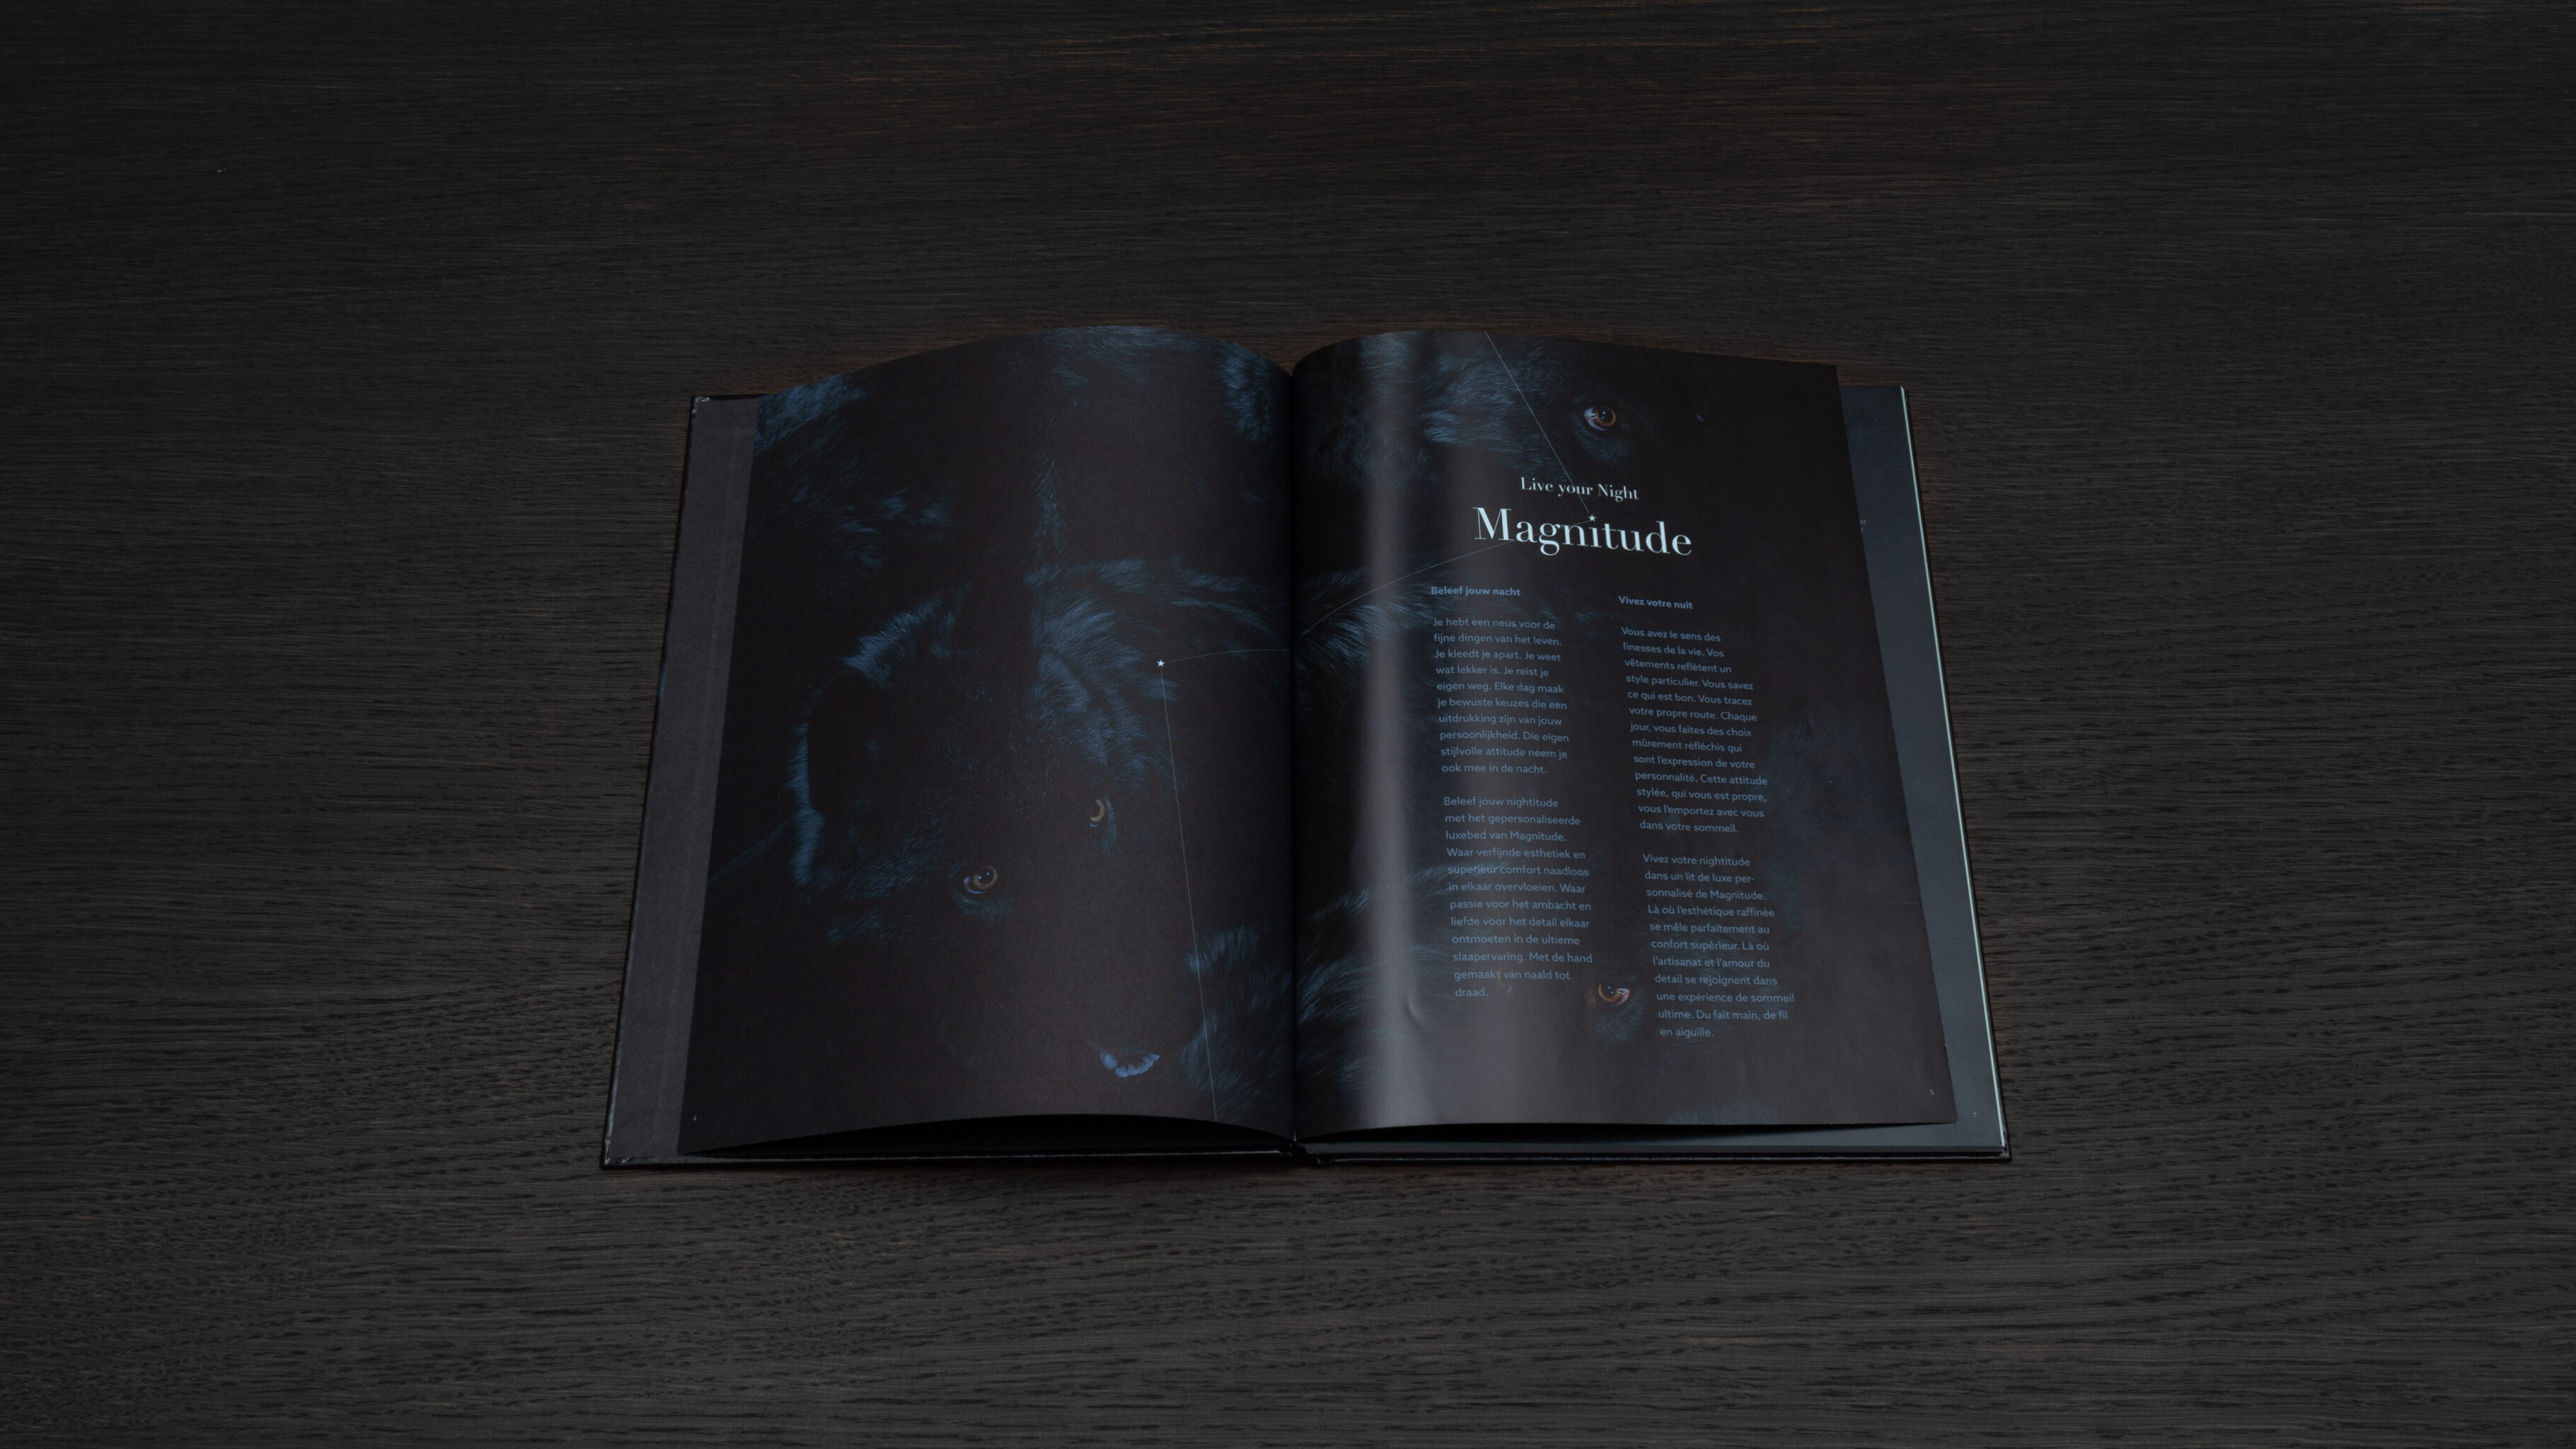 Magnitude editions by Vandekerckhove & Devos